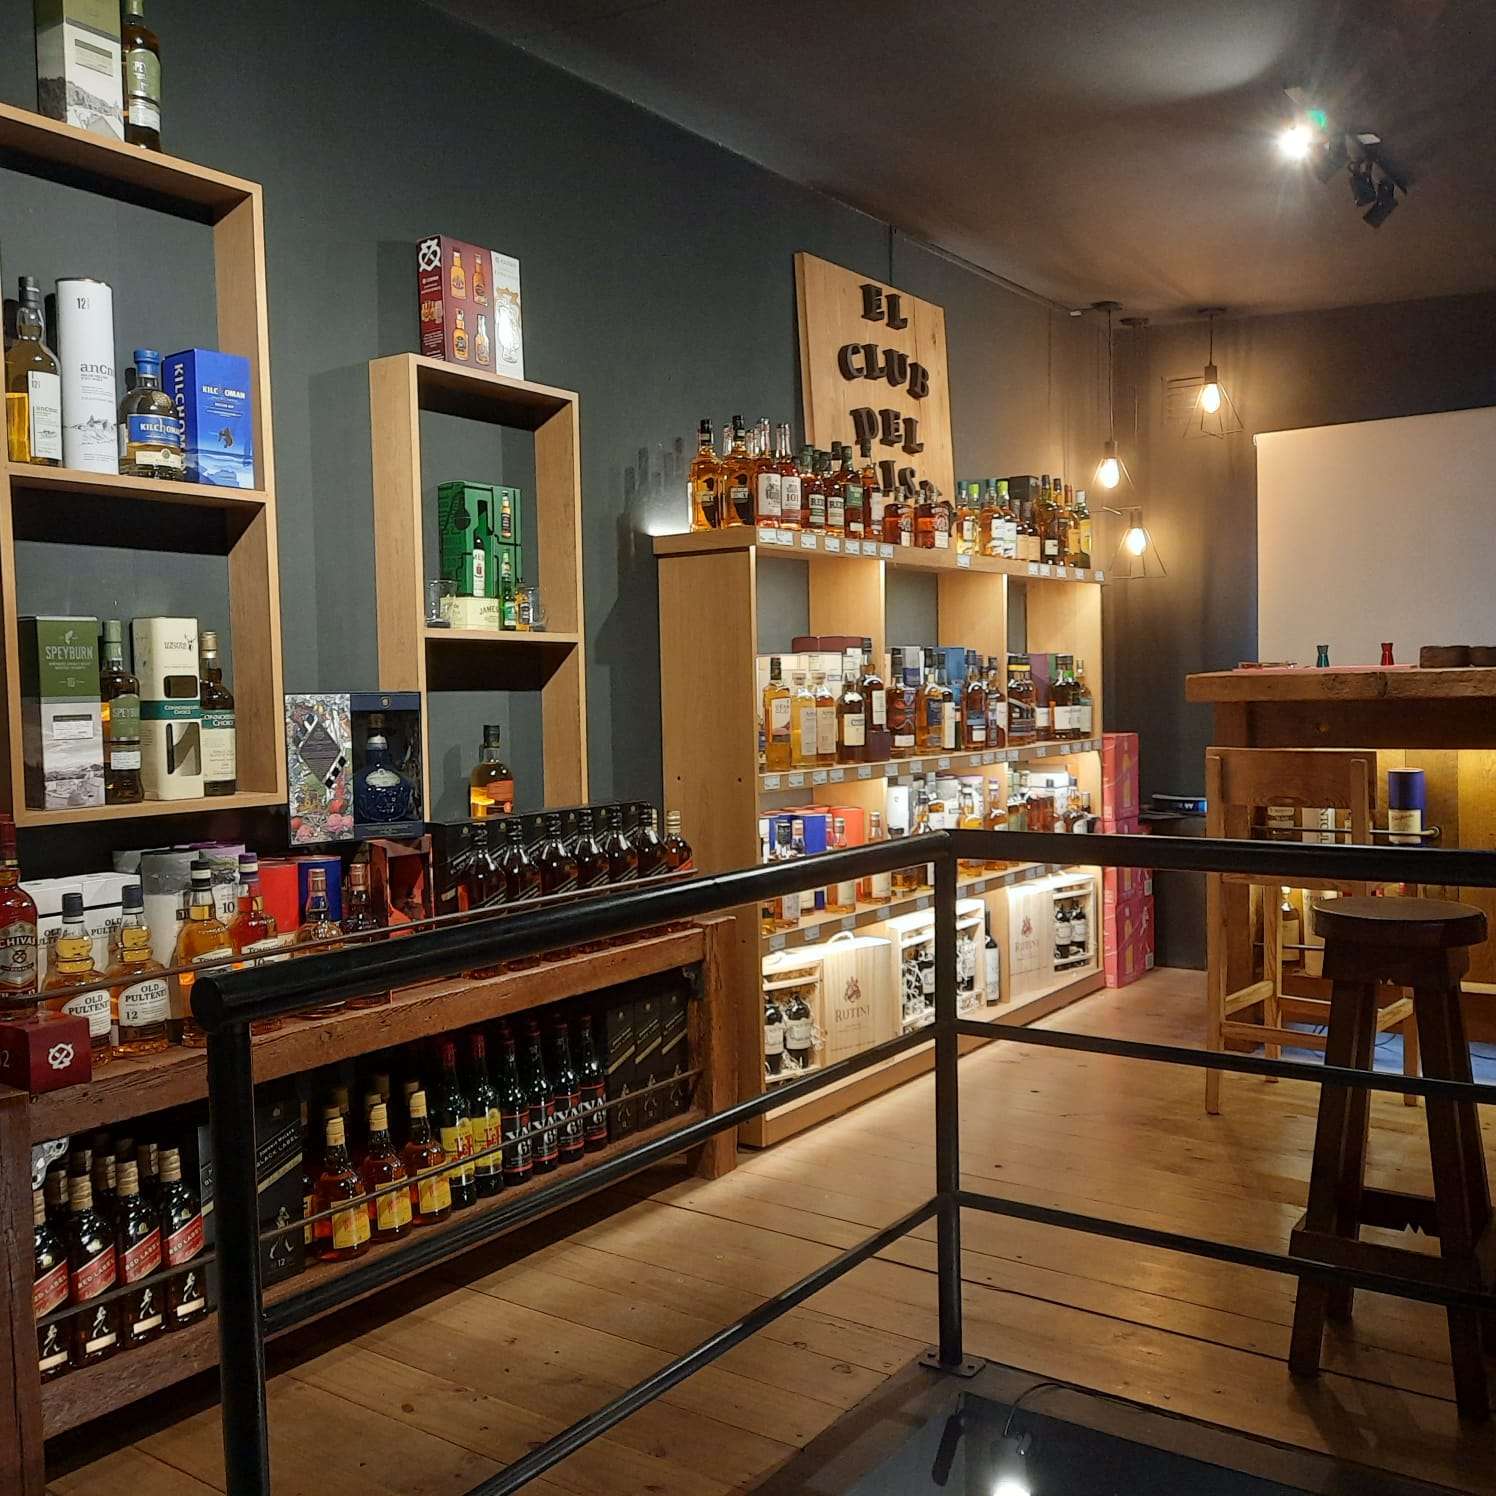 Con más de 100 variedades para degustar, “El Club de Whisky” ya tiene su lugar en Black